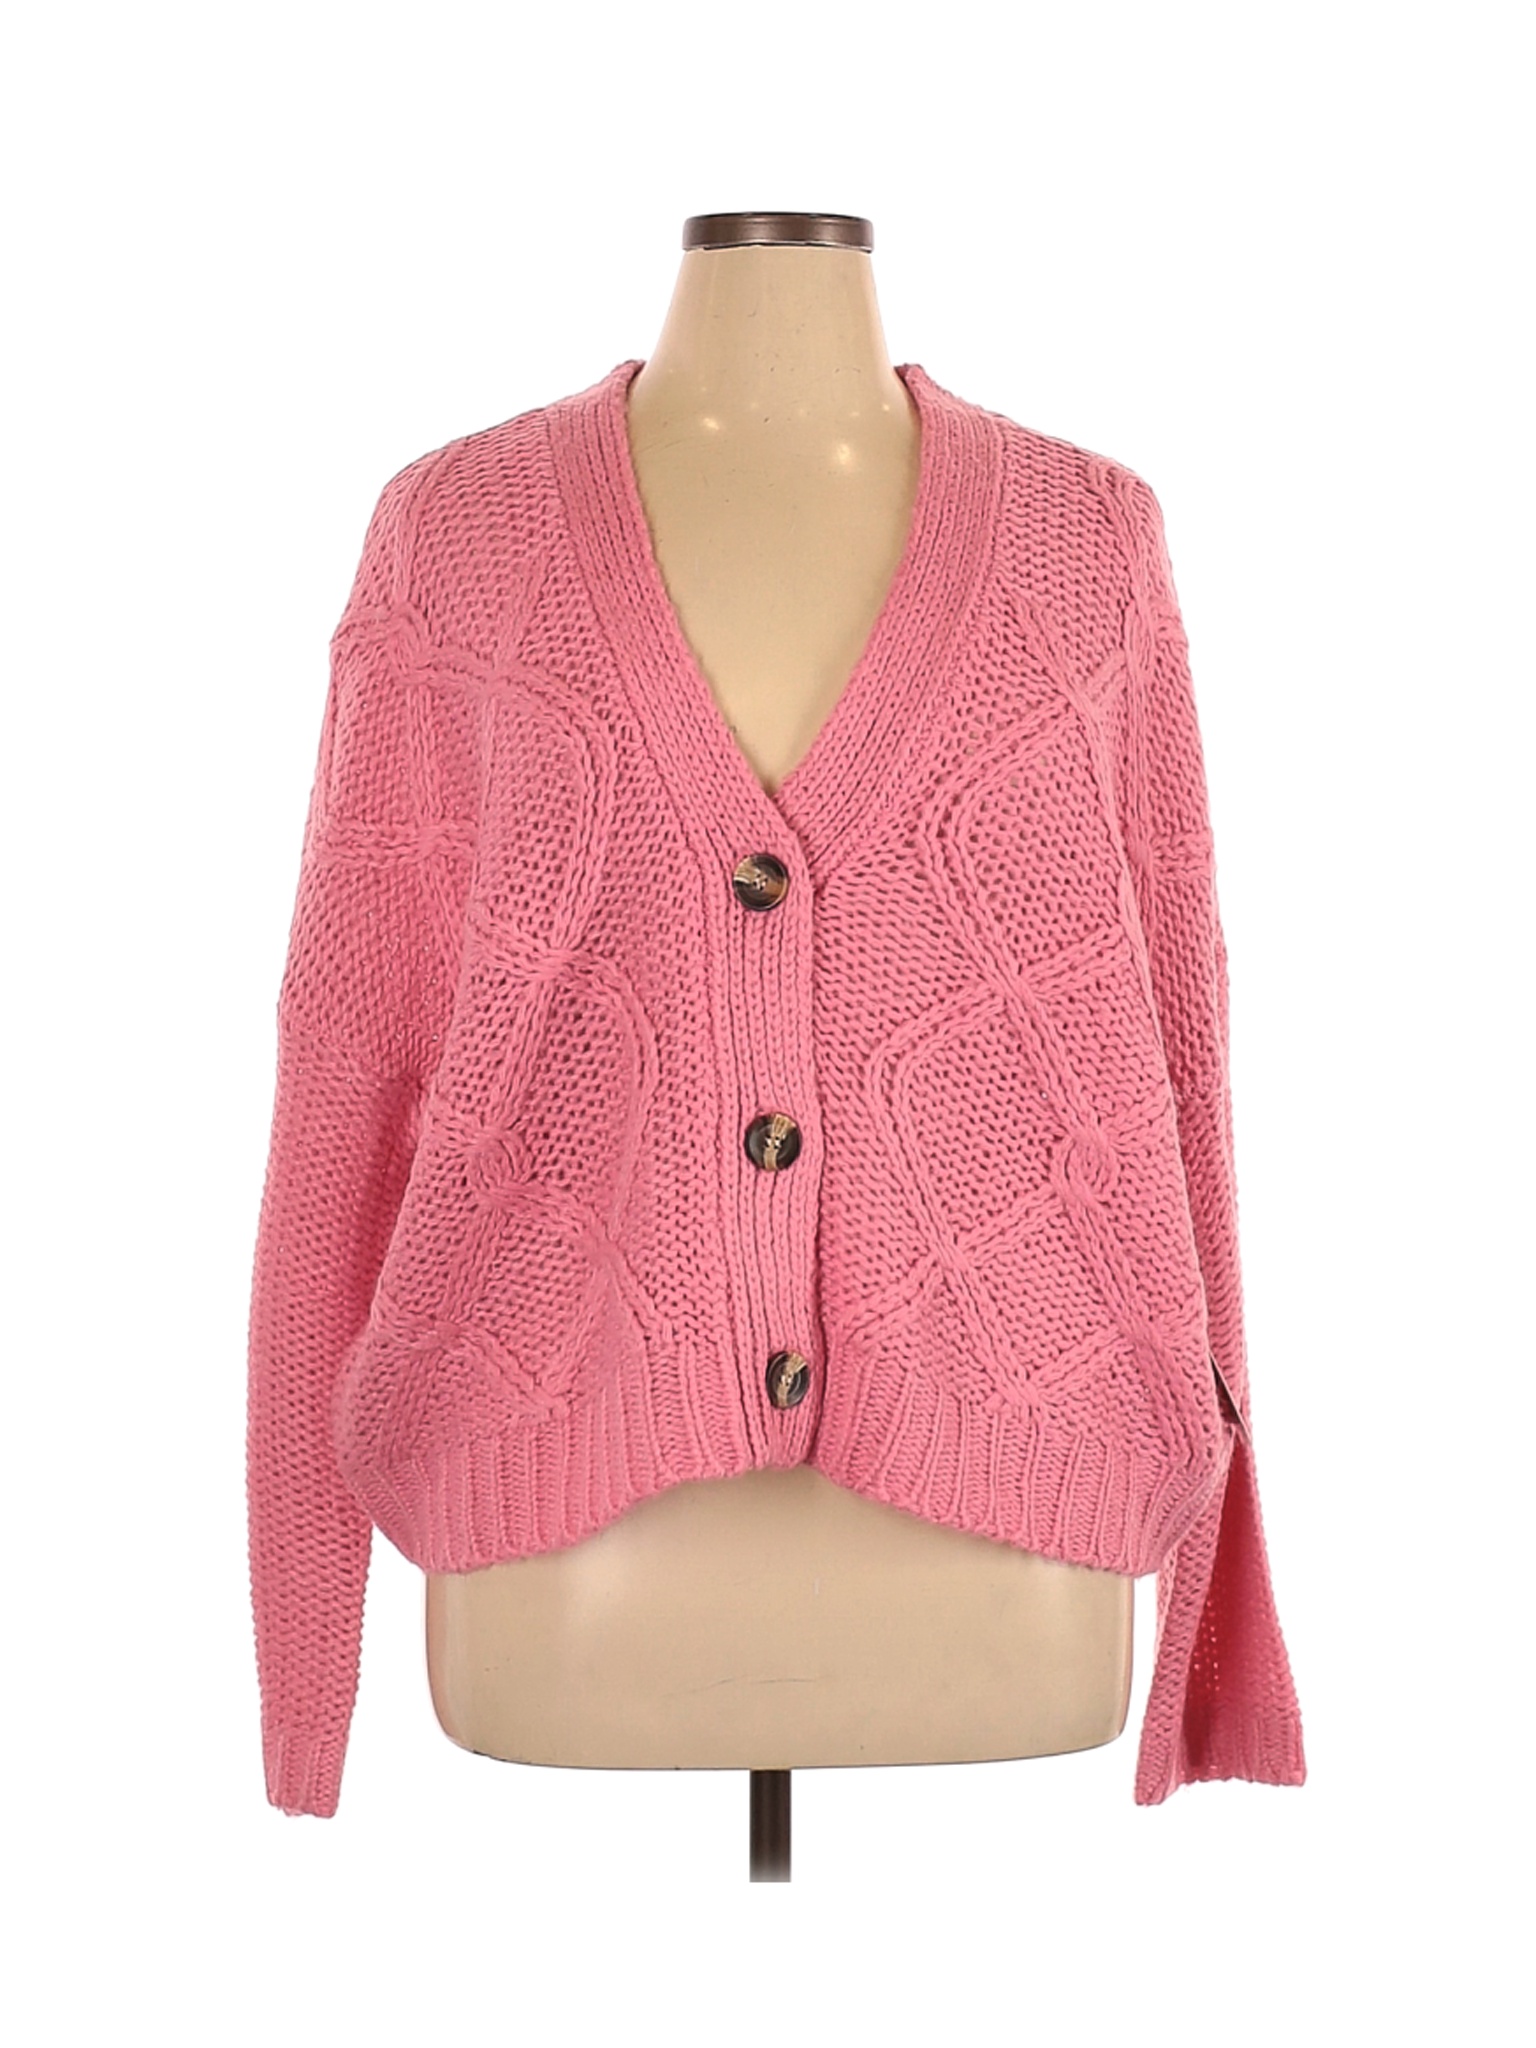 NWT RD Style Women Pink Cardigan XL | eBay